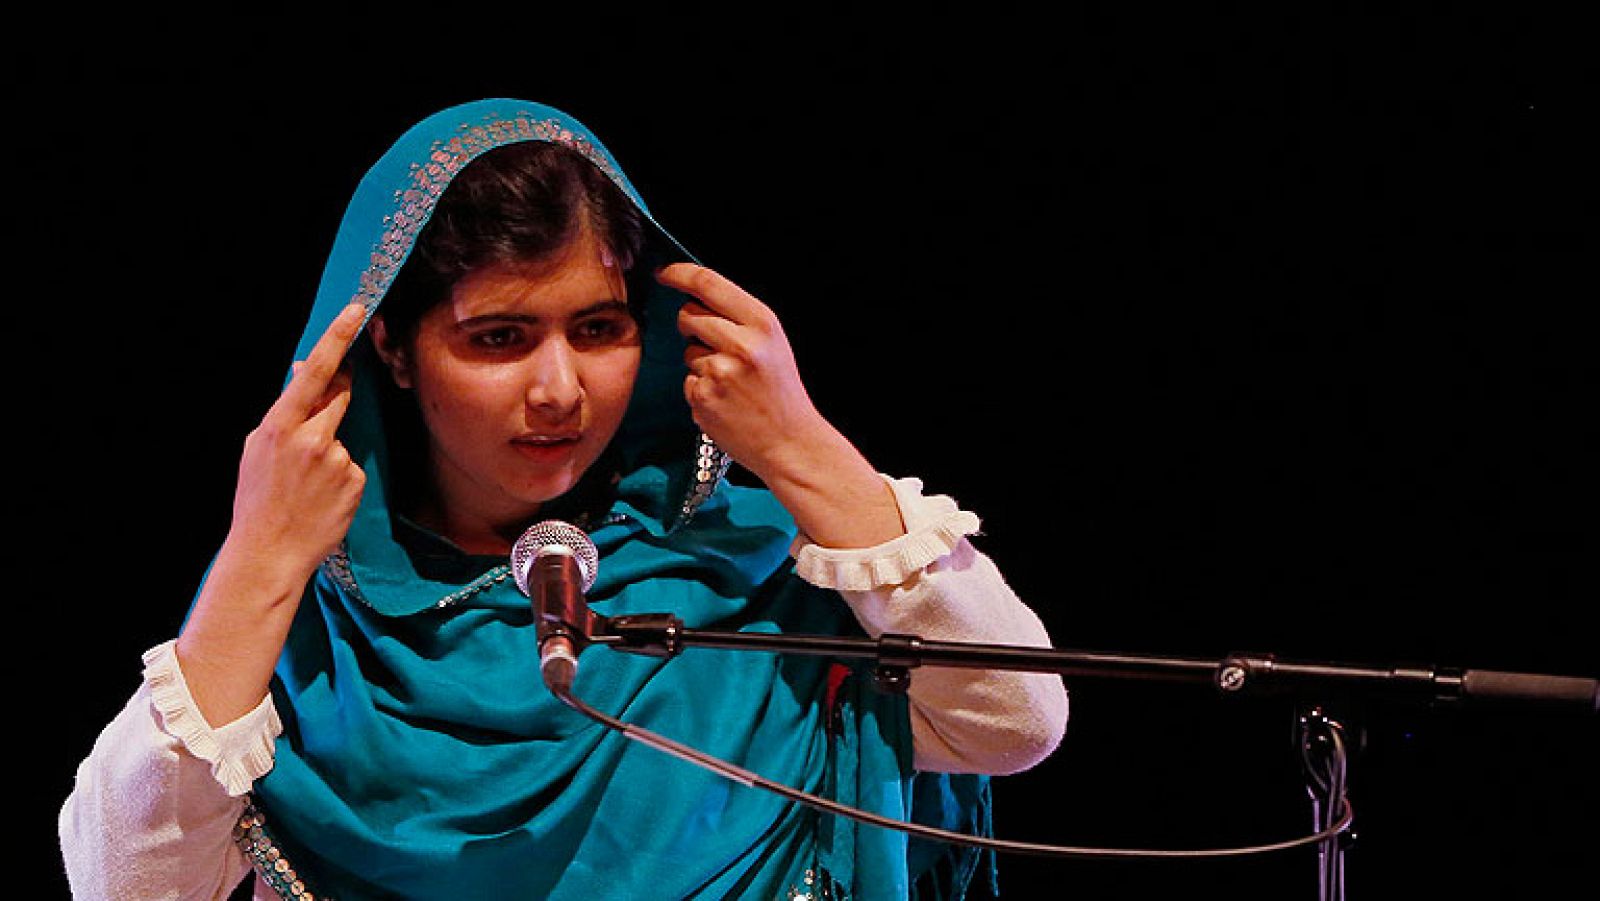  Malala Yousafzai, la adolescente paquistaní de 16 años que sobrevivió a disparos de los talibanes por defender la educación femenina en su país, ha pedido dialogar con los militantes para resolver los problemas y alcanzar la paz.